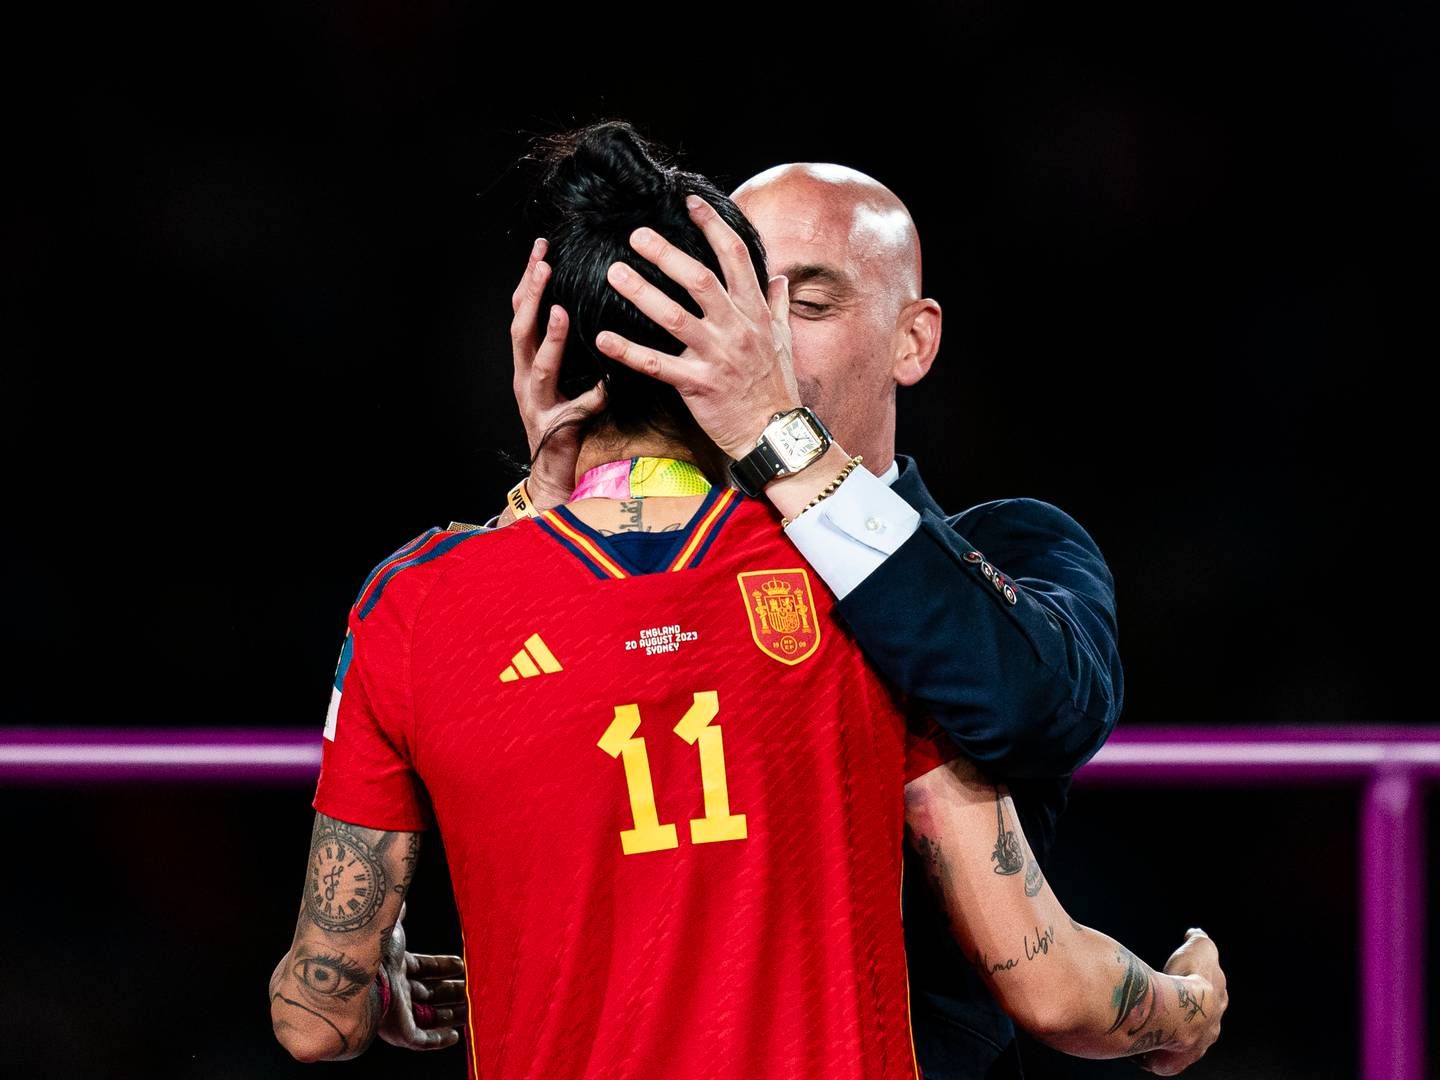 Præsidenten for den spanske fodboldføderation, Luis Rubiales, kysser spilleren Jennifer Hermoso under medaljeceremonien ved FIFA's verdensmesterskab for kvinder i fodbold. | Photo: Getty Images